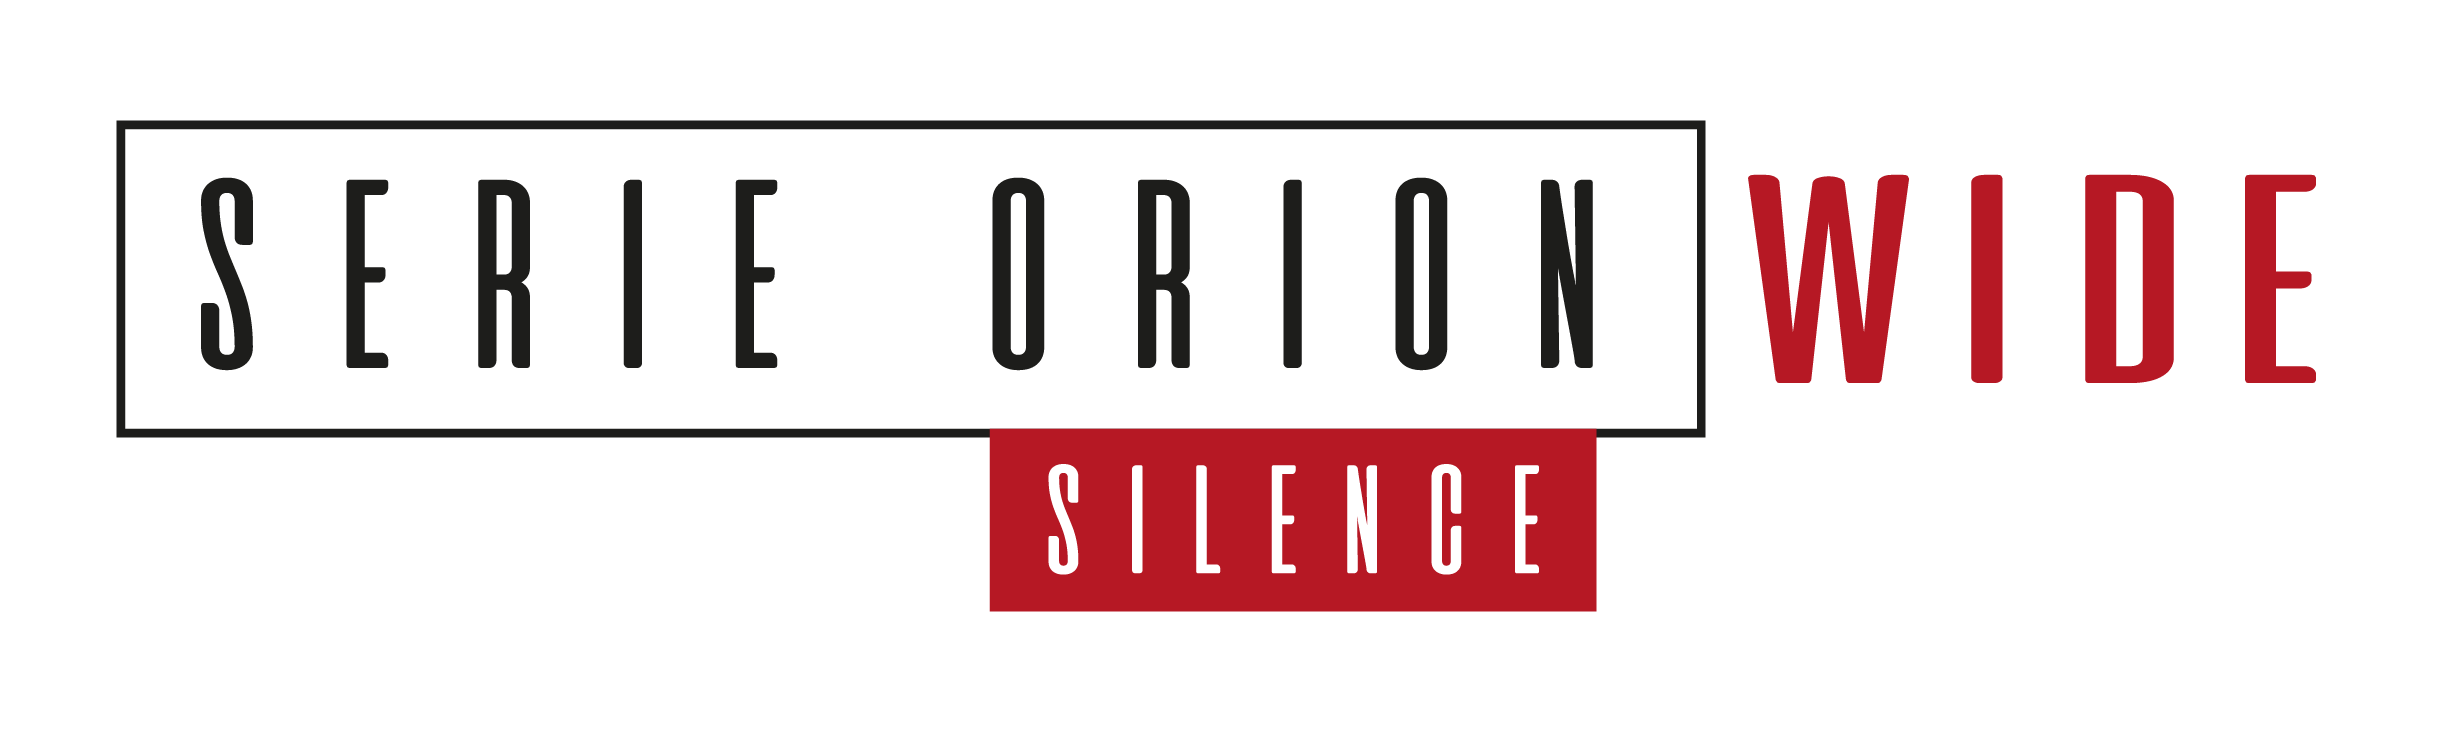 Suelo vinilico vinilo Orion Silence WIDE